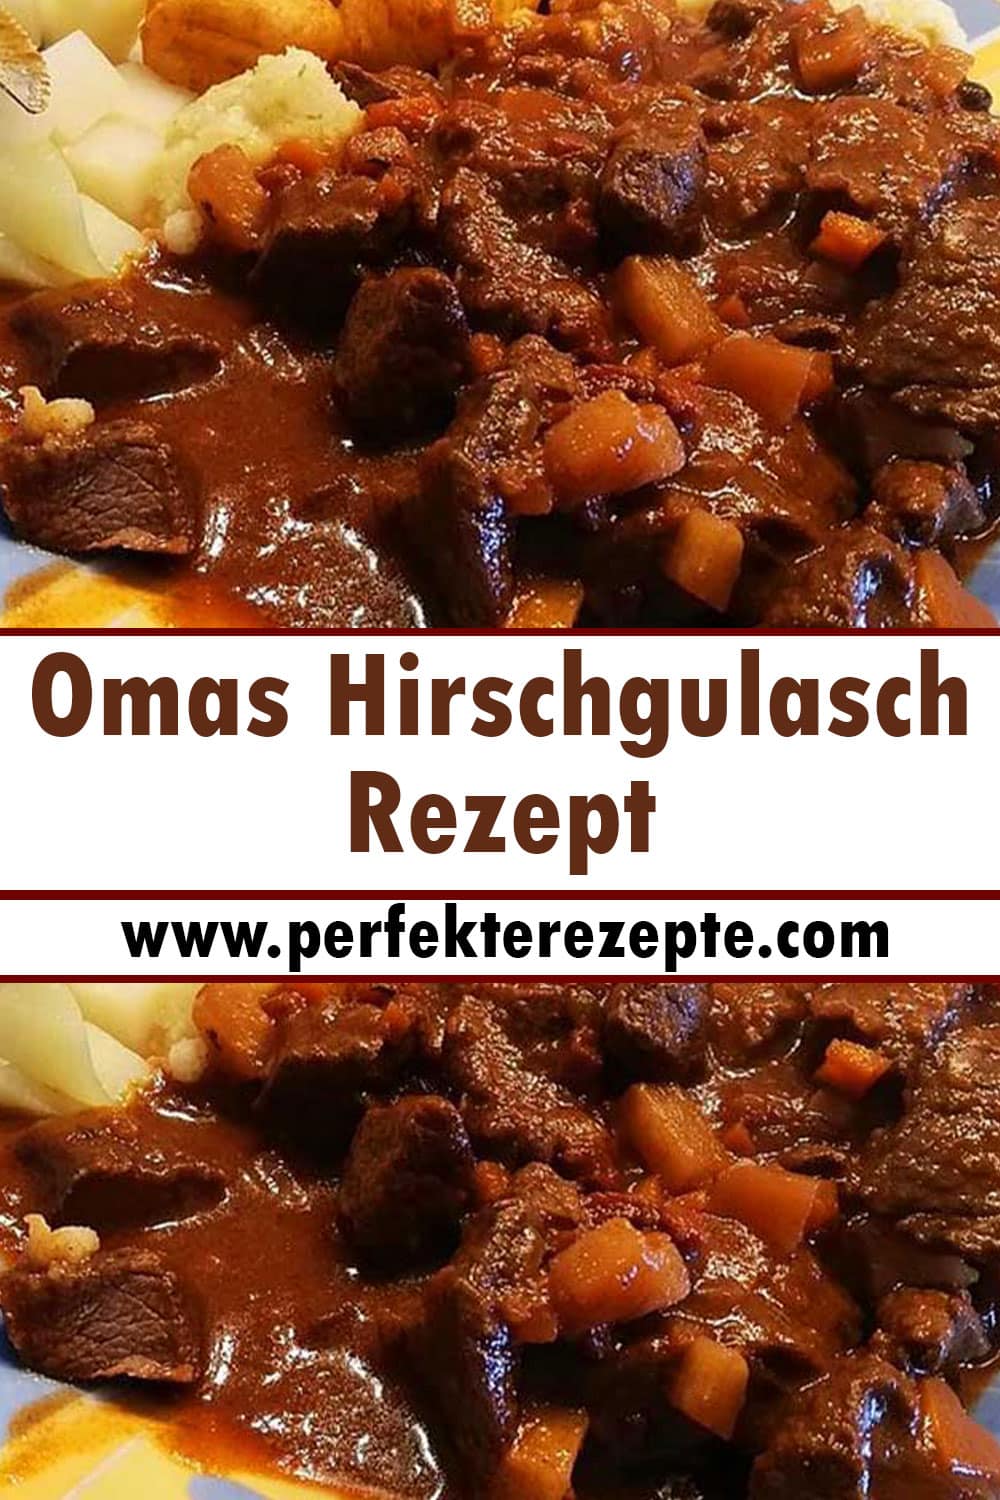 Omas Hirschgulasch Rezept